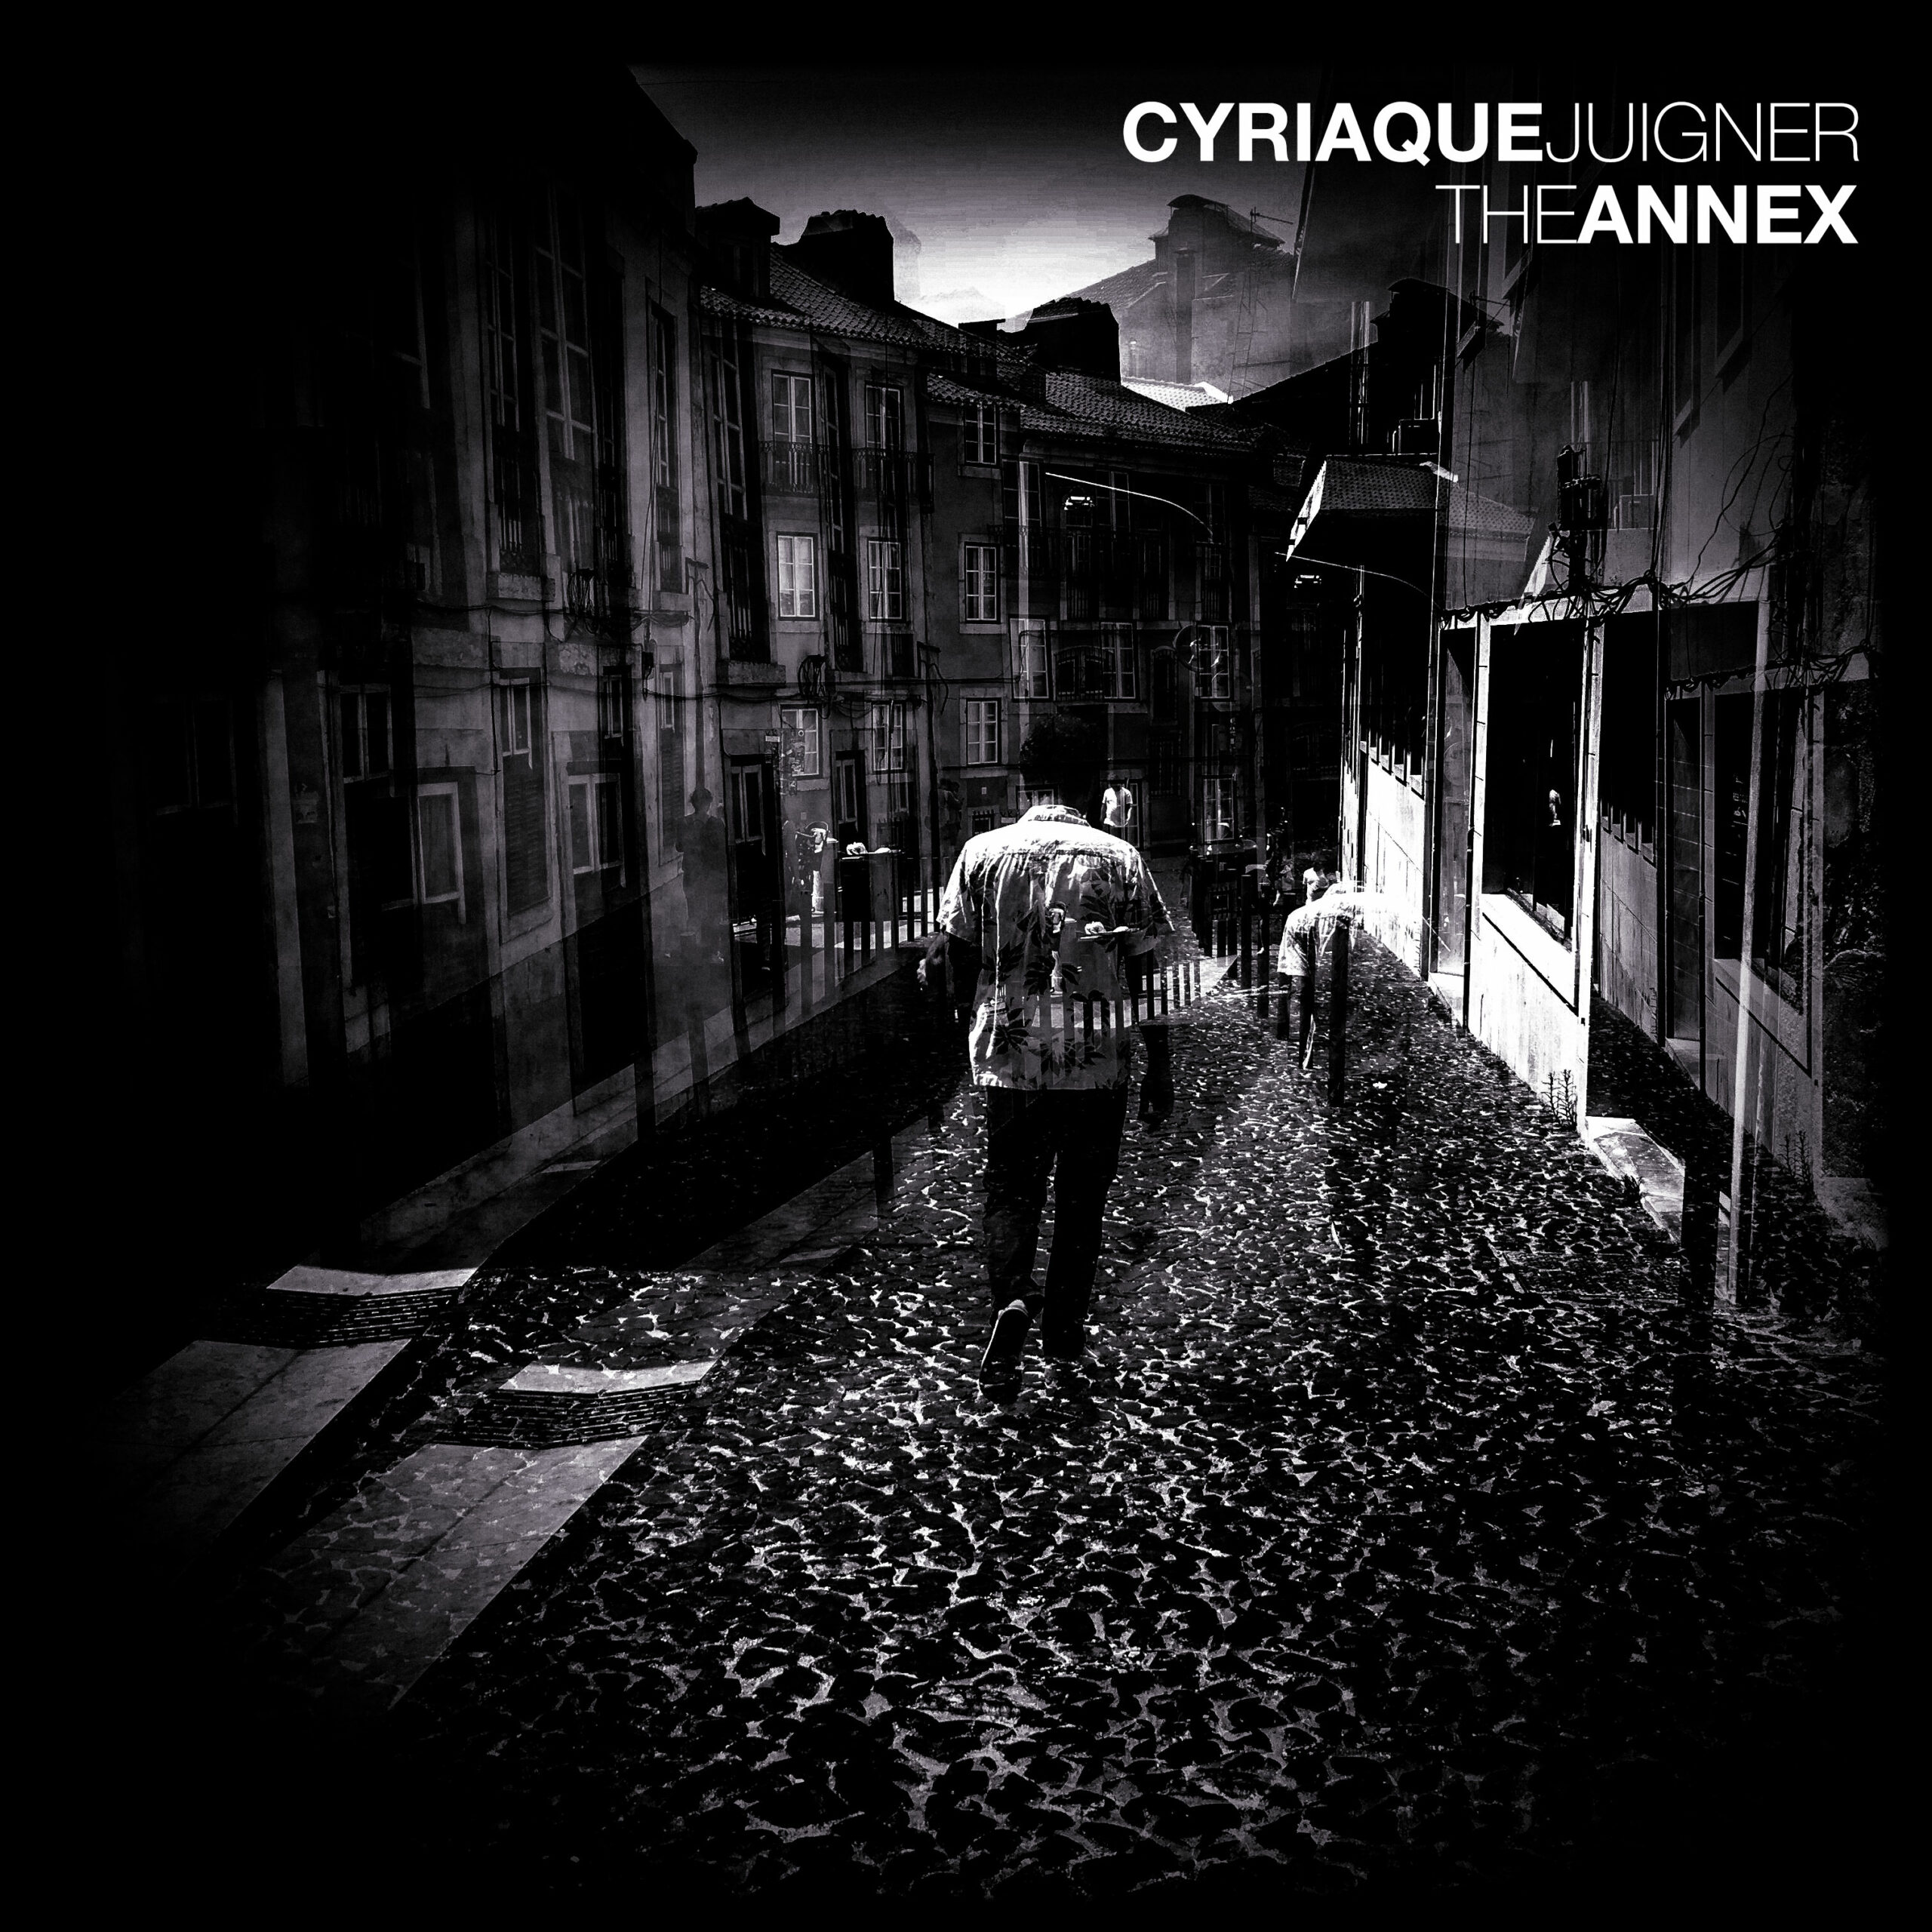 Cyriaque Juigner - The Annex